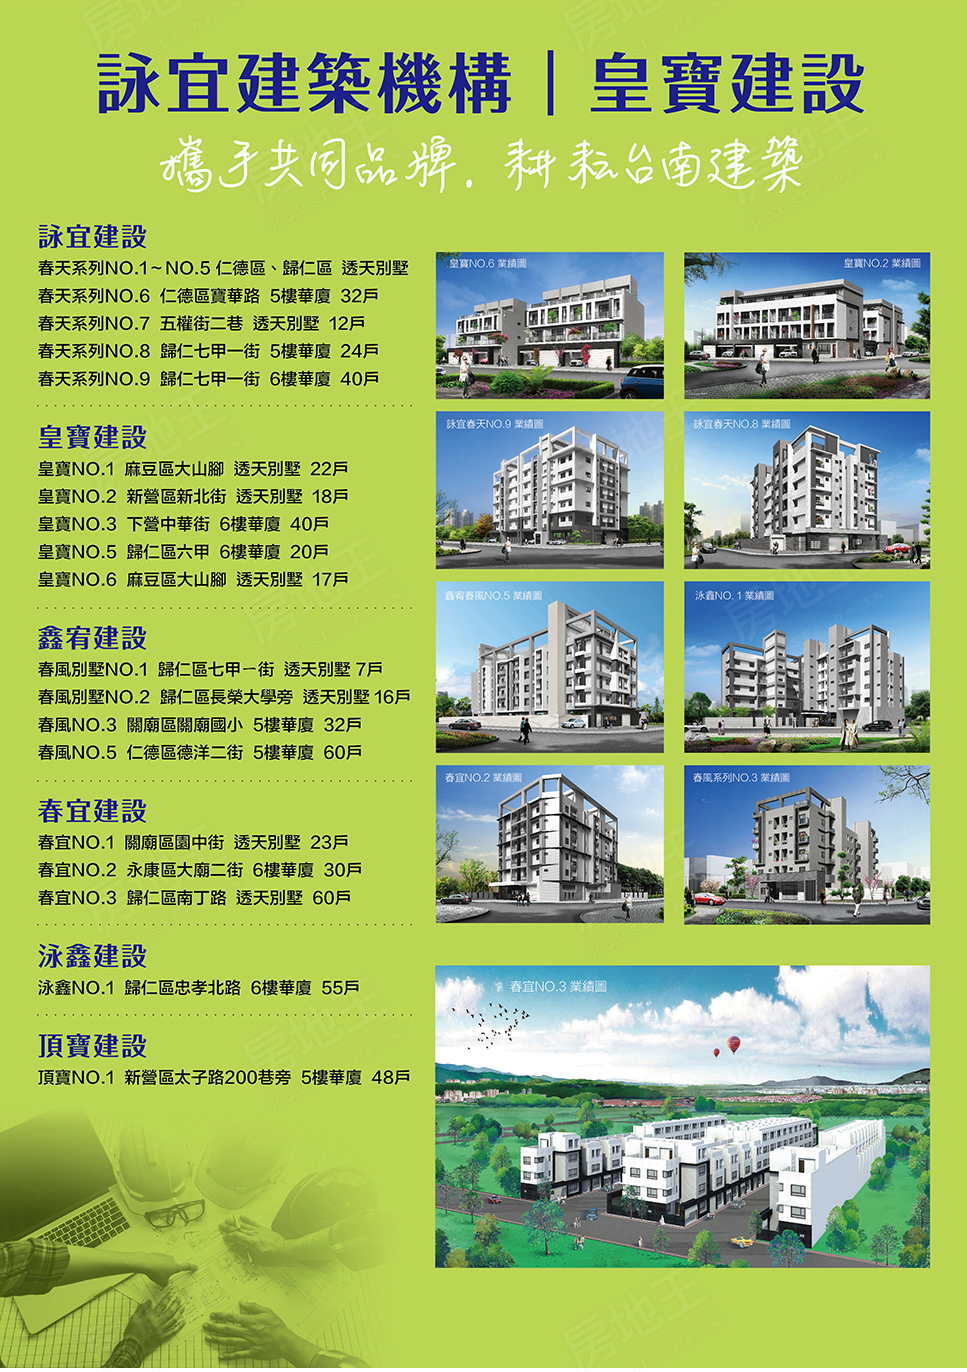 台南預售屋建案